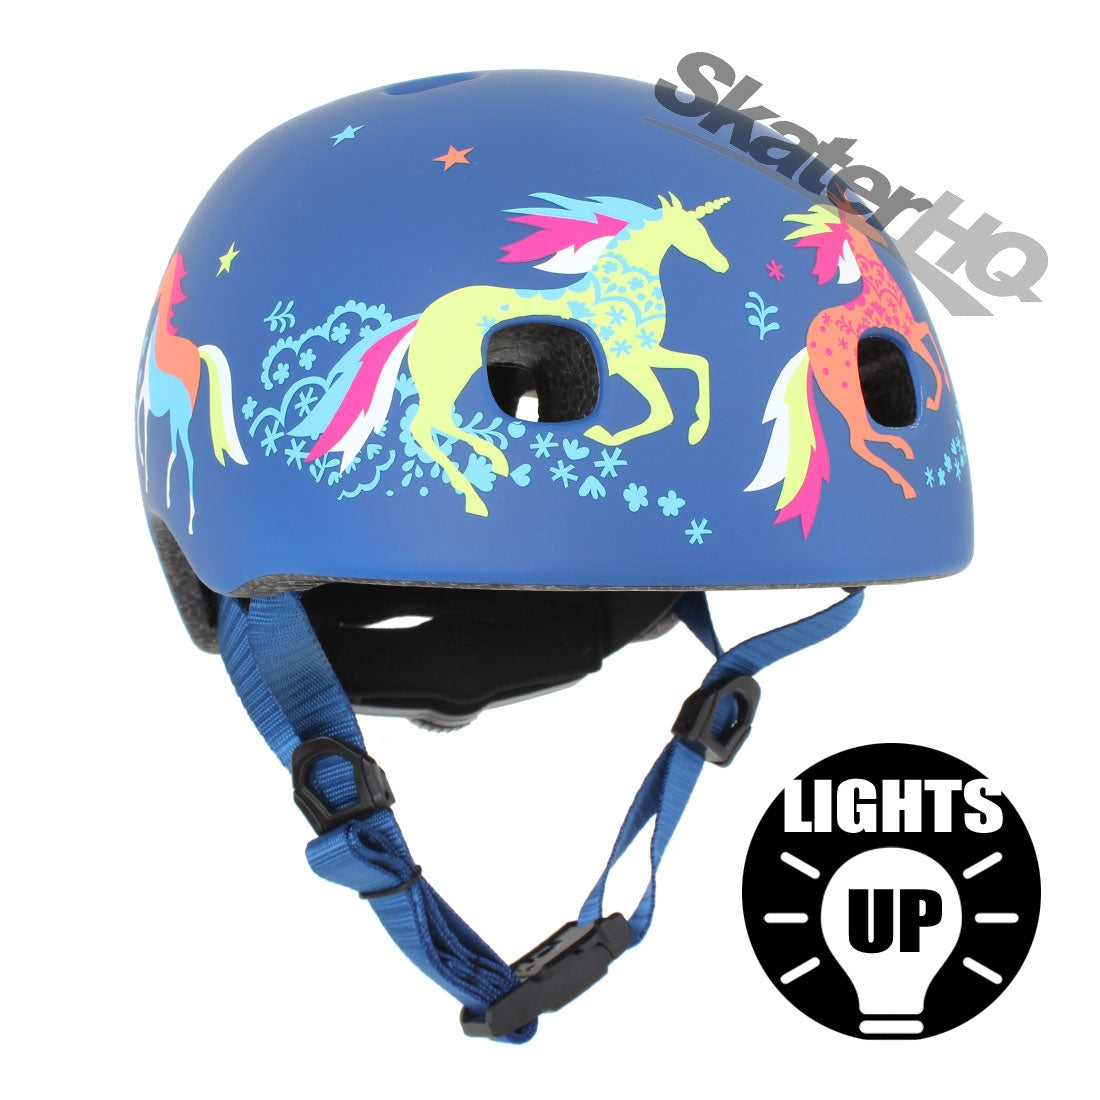 Micro Unicorns LED Helmet - XSmall Helmets